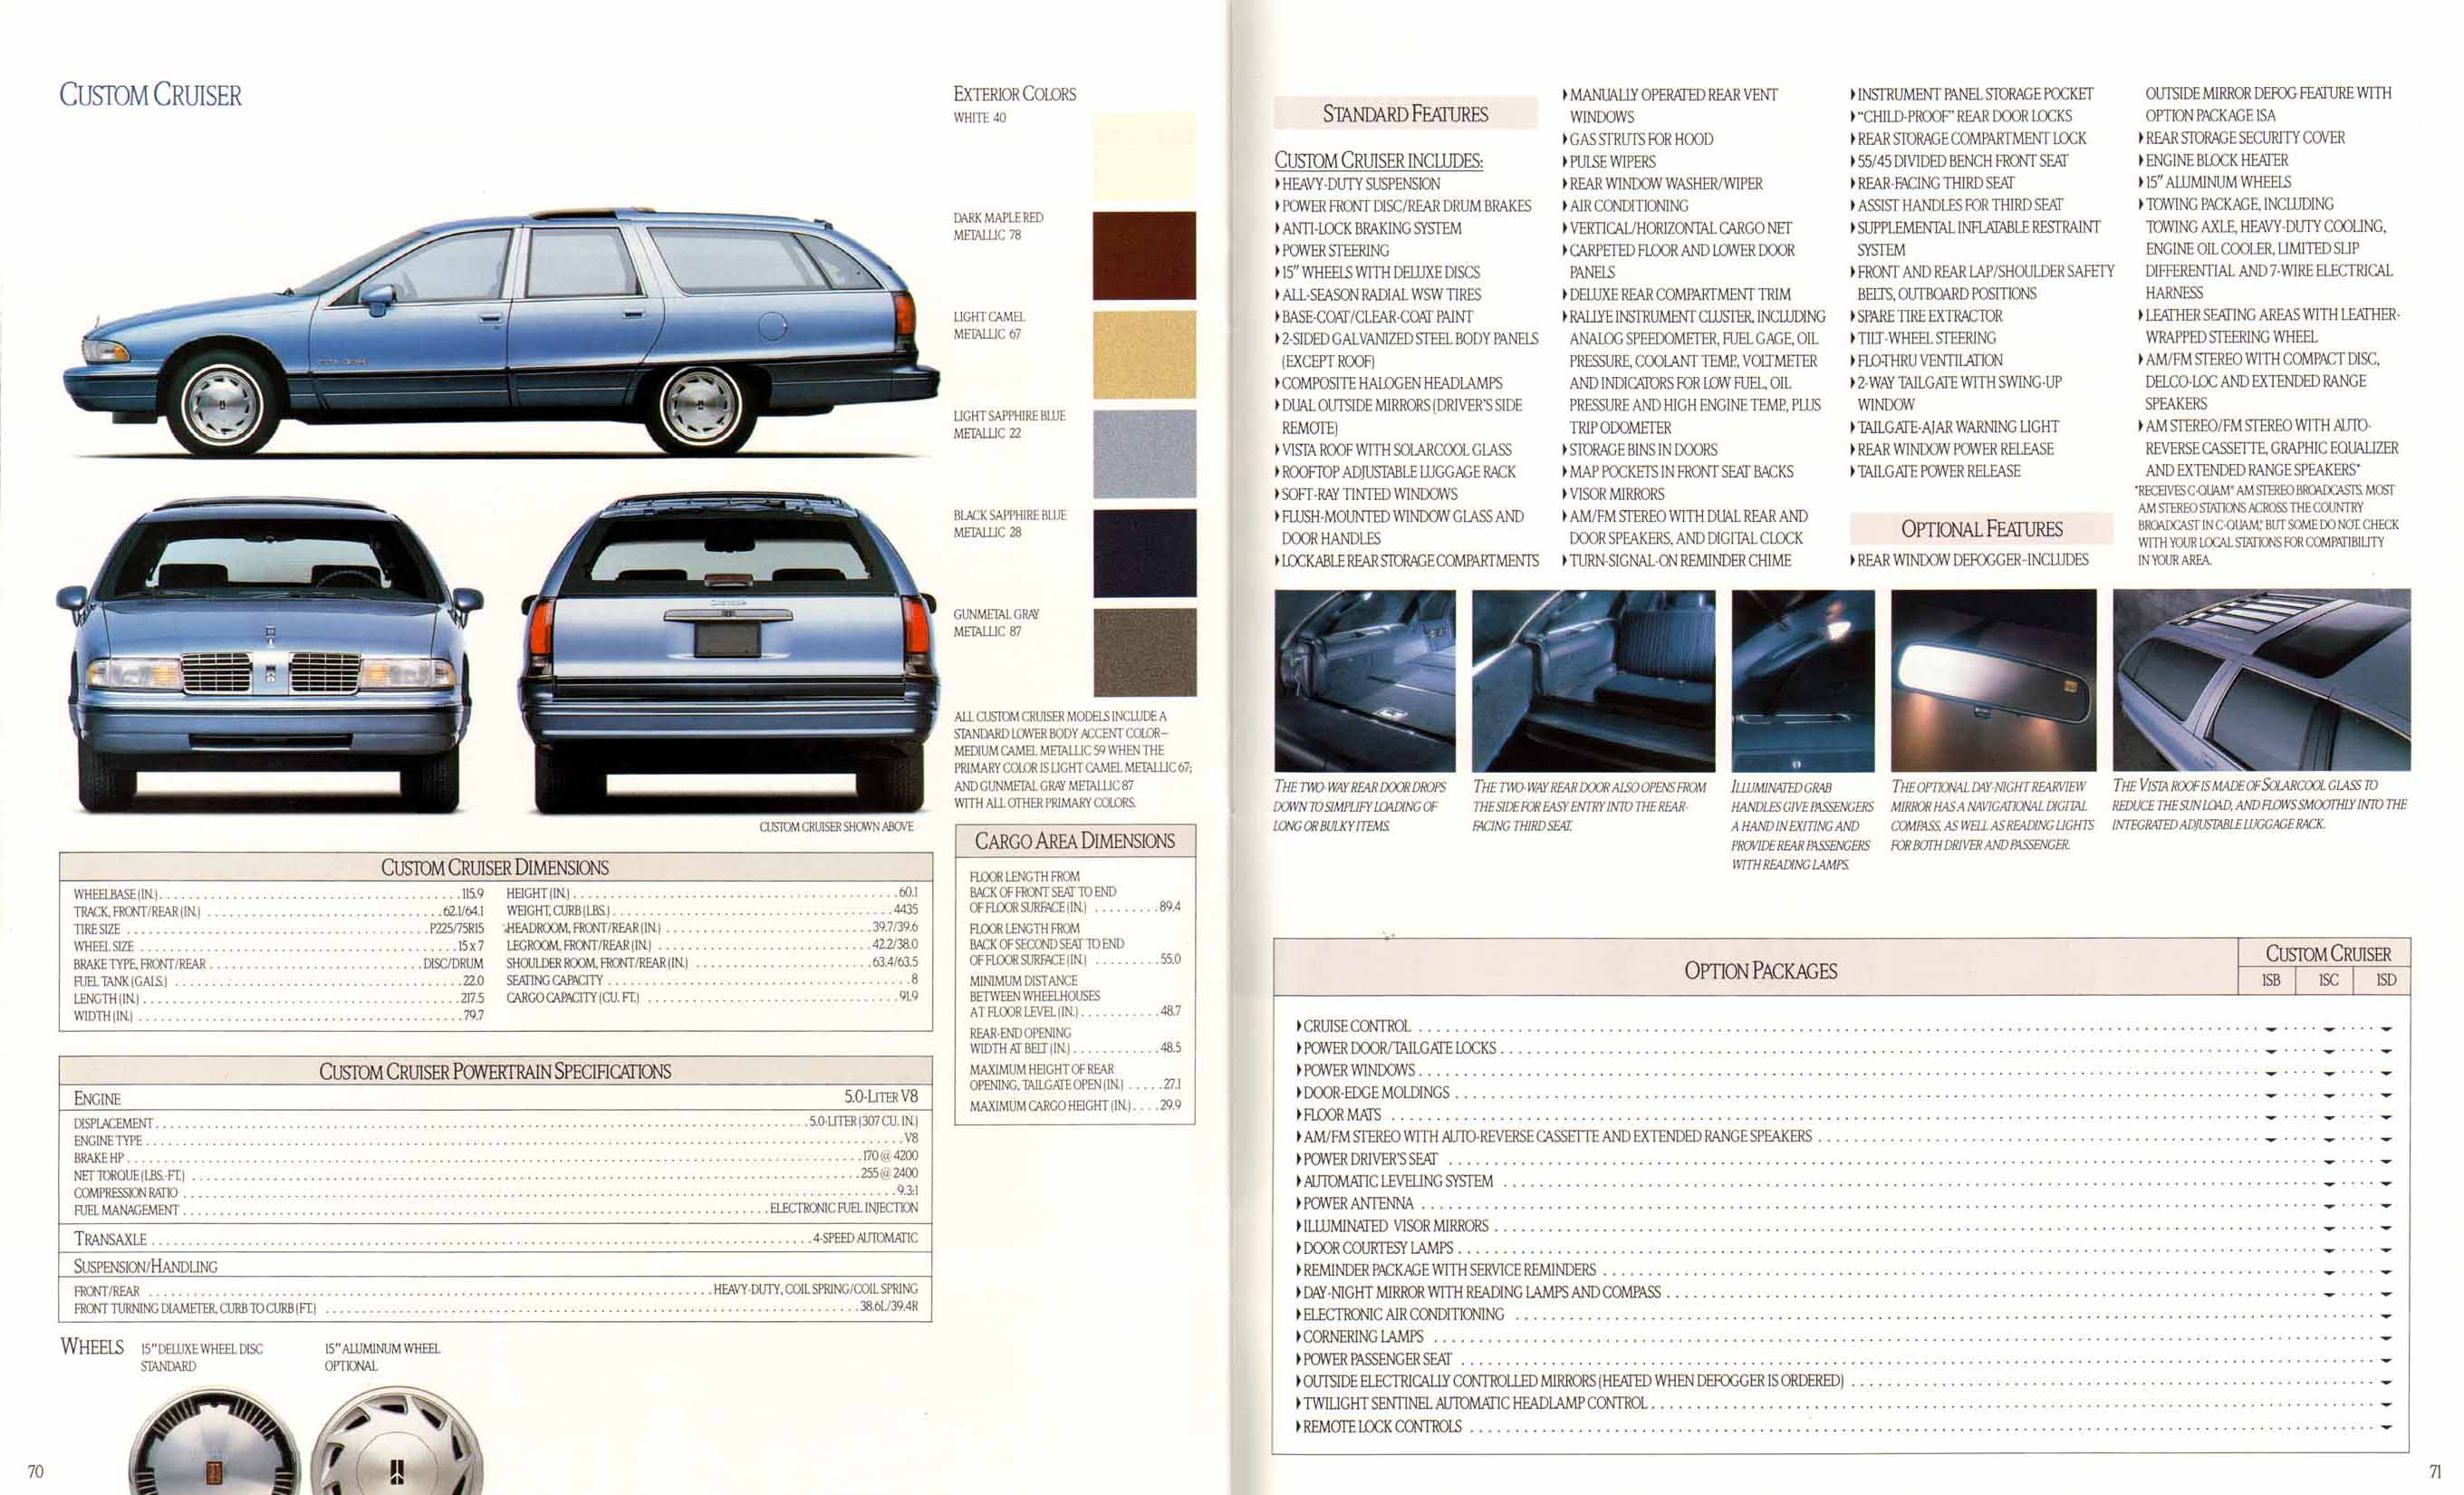 1991_Oldsmobile_Full_Line_Prestige-70-71